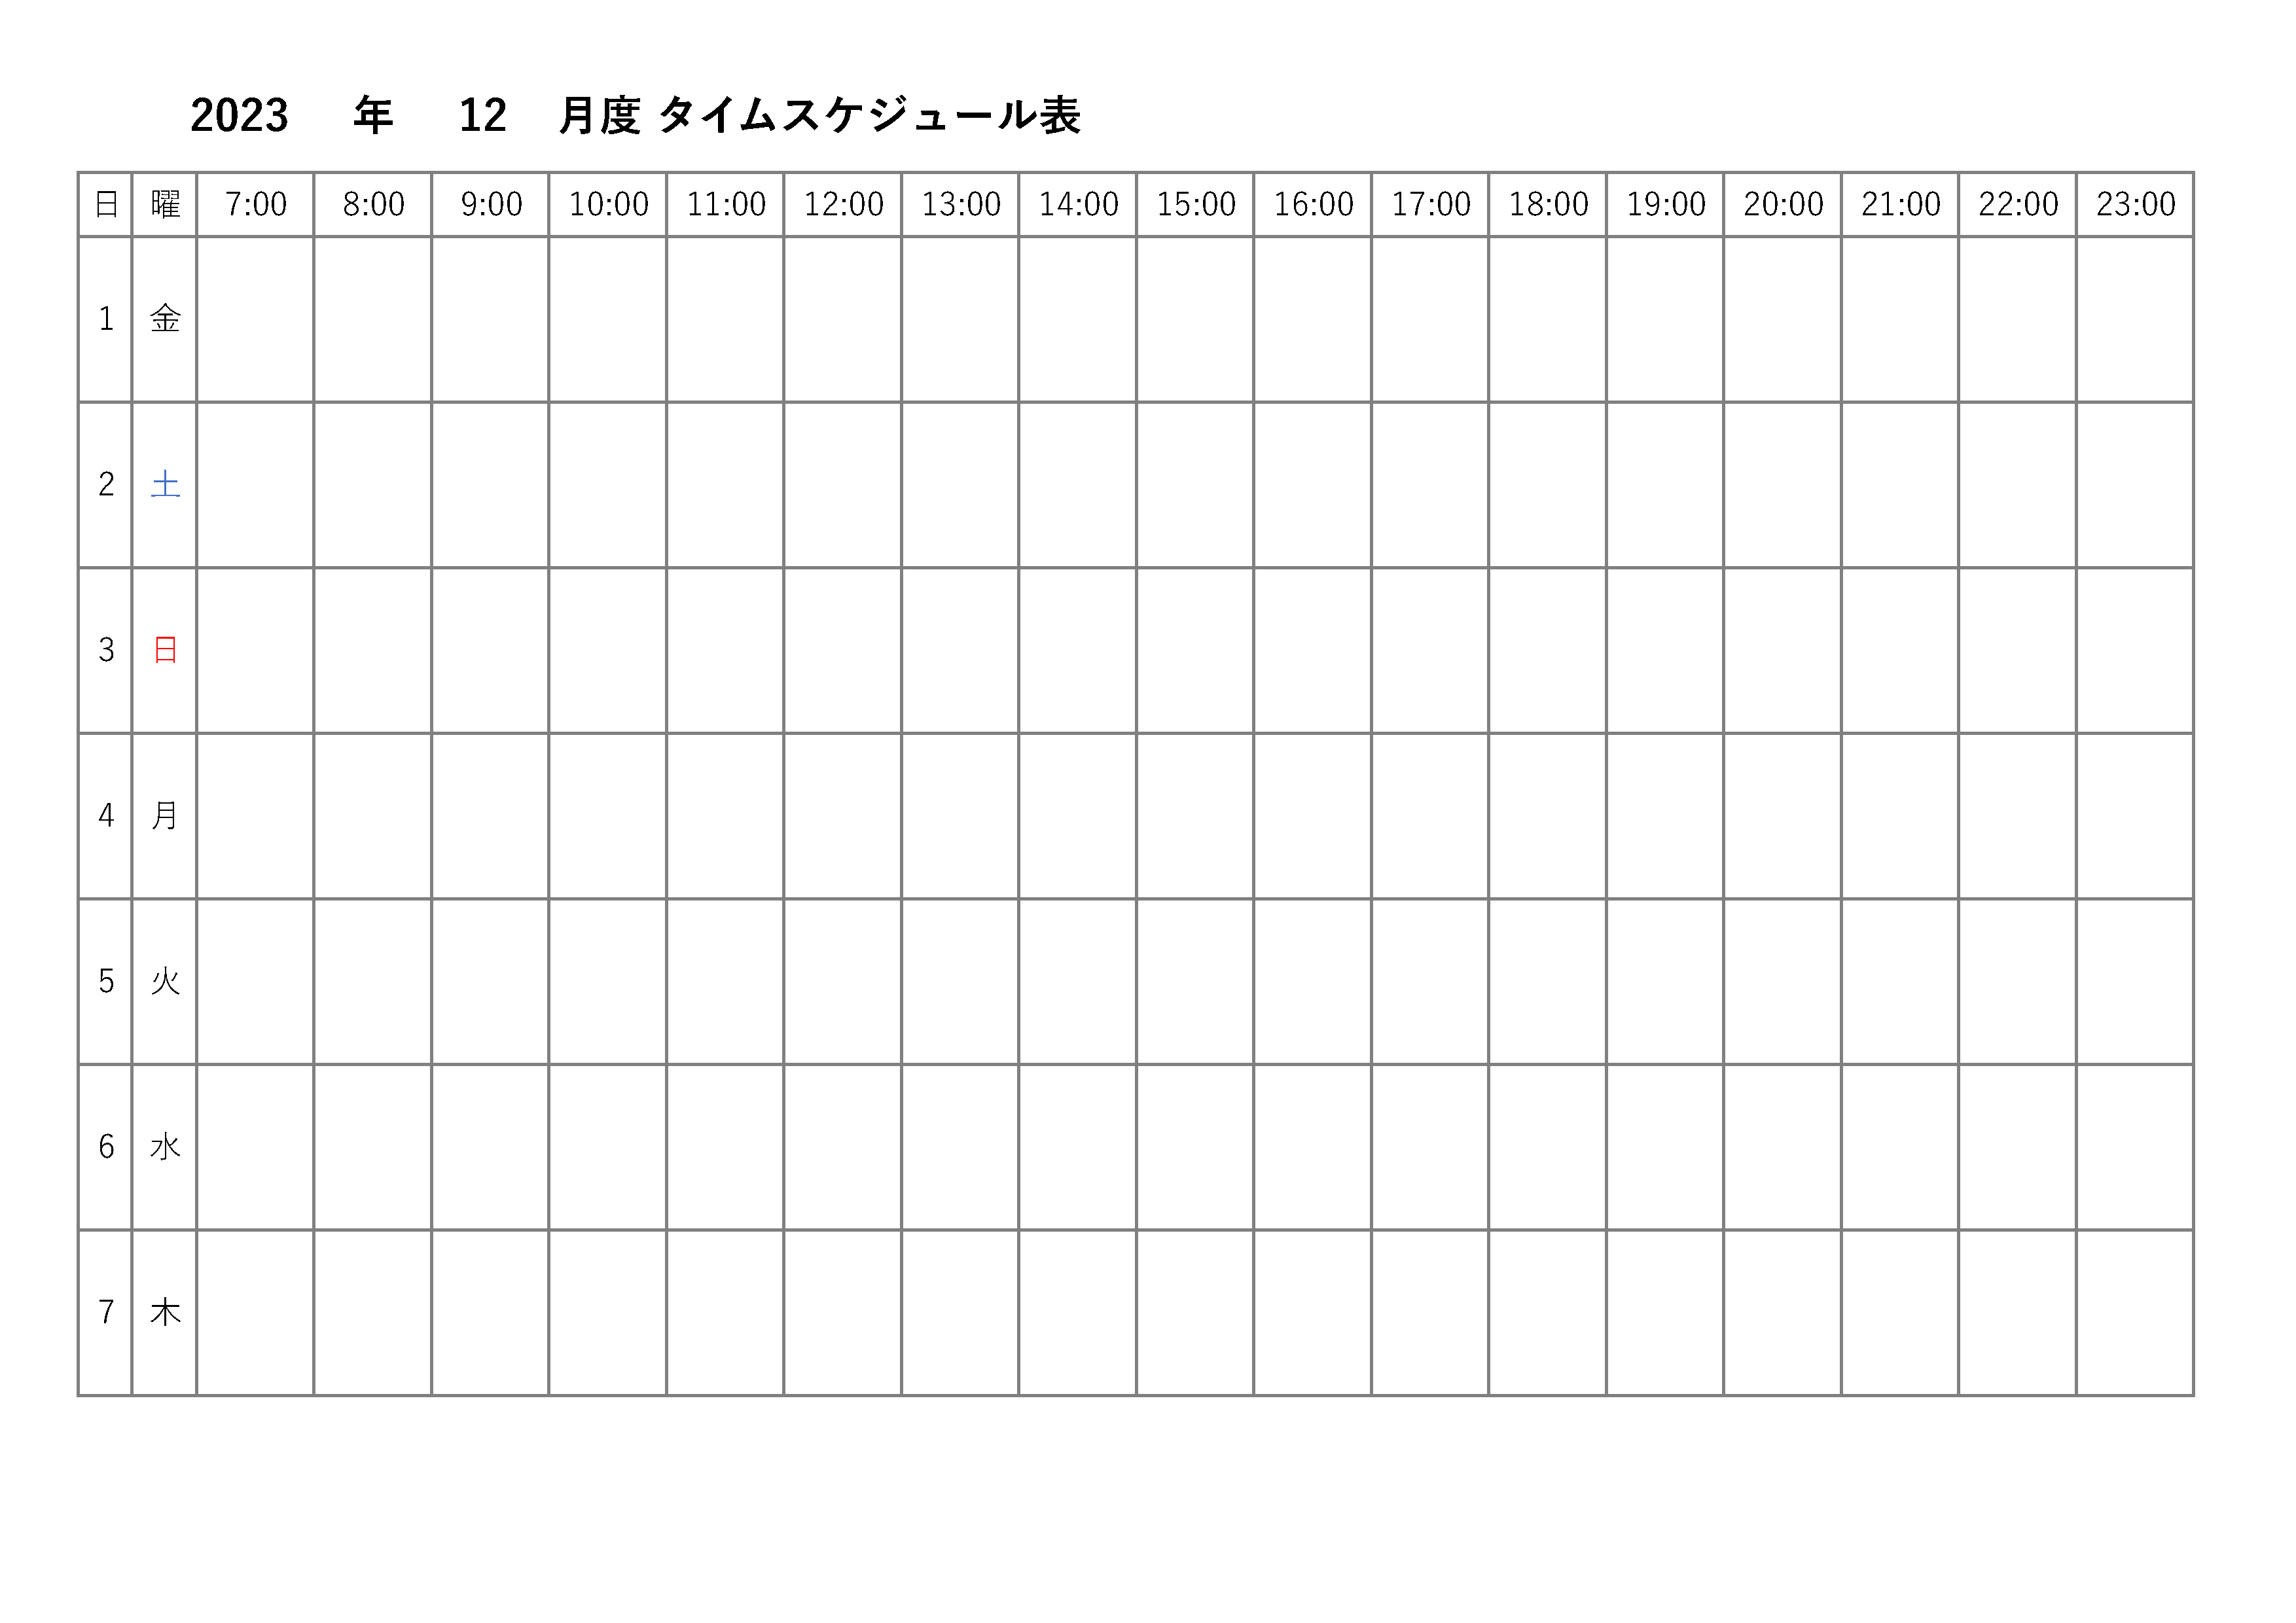 縦向きに1日から31日まで表示されている、月間タイムスケジュール表